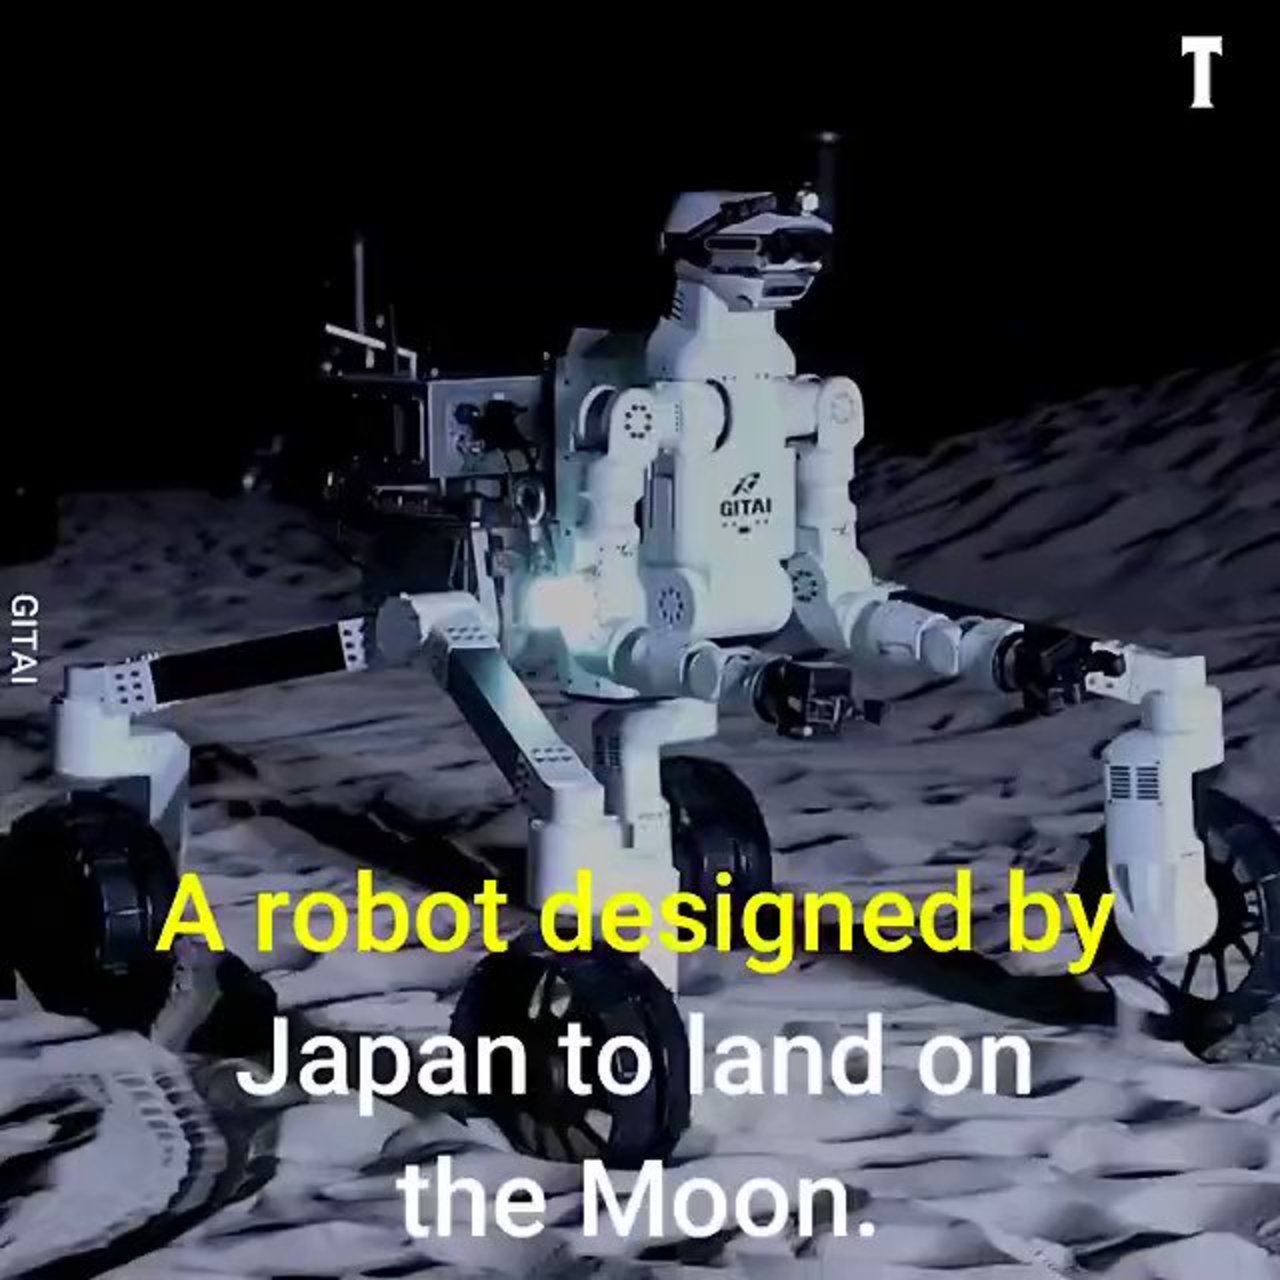 A #Robot designed by Japan to land on the moon via @CurieuxExplorer #Robotics #MachineLearning #Innovation #AI #ArtificialIntelligence #MI #Tech #Technology cc: @akwyz @severinelienard @danielnewmanuv https://t.co/aXA0GxbT0C